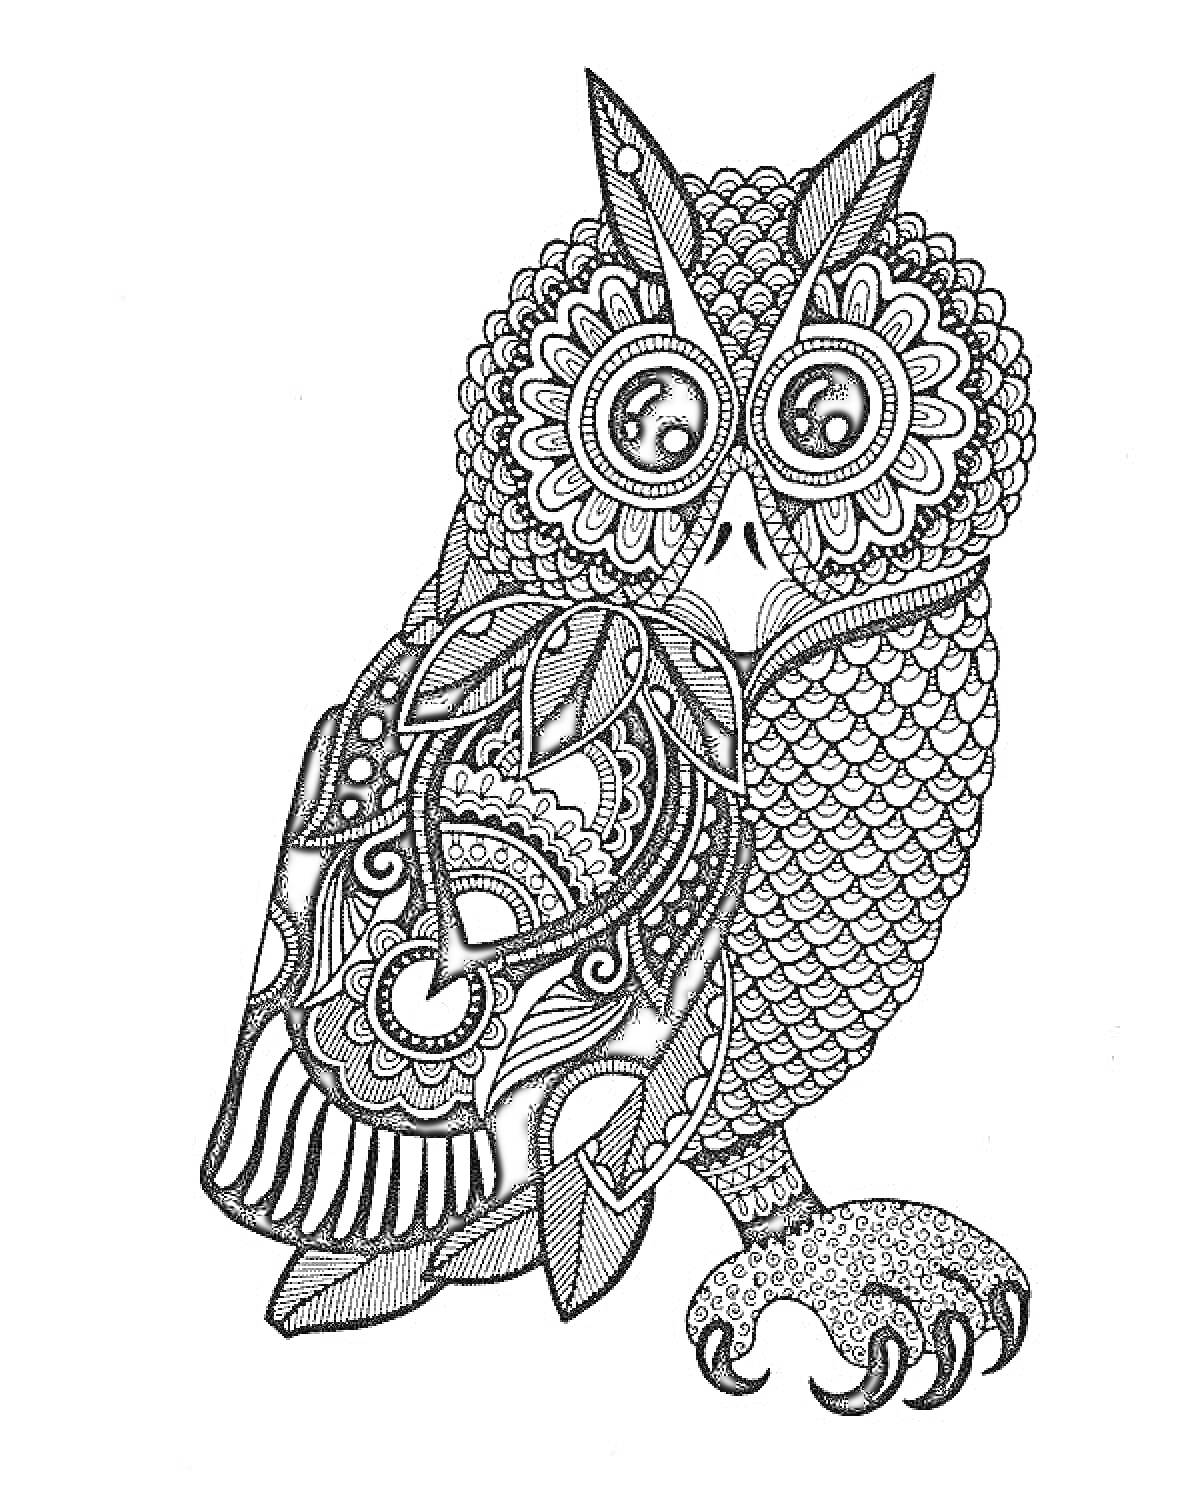 Раскраска Антистресс раскраска - Сова с художественным орнаментом, декоративные перья, крупные глаза, замысловатый узор